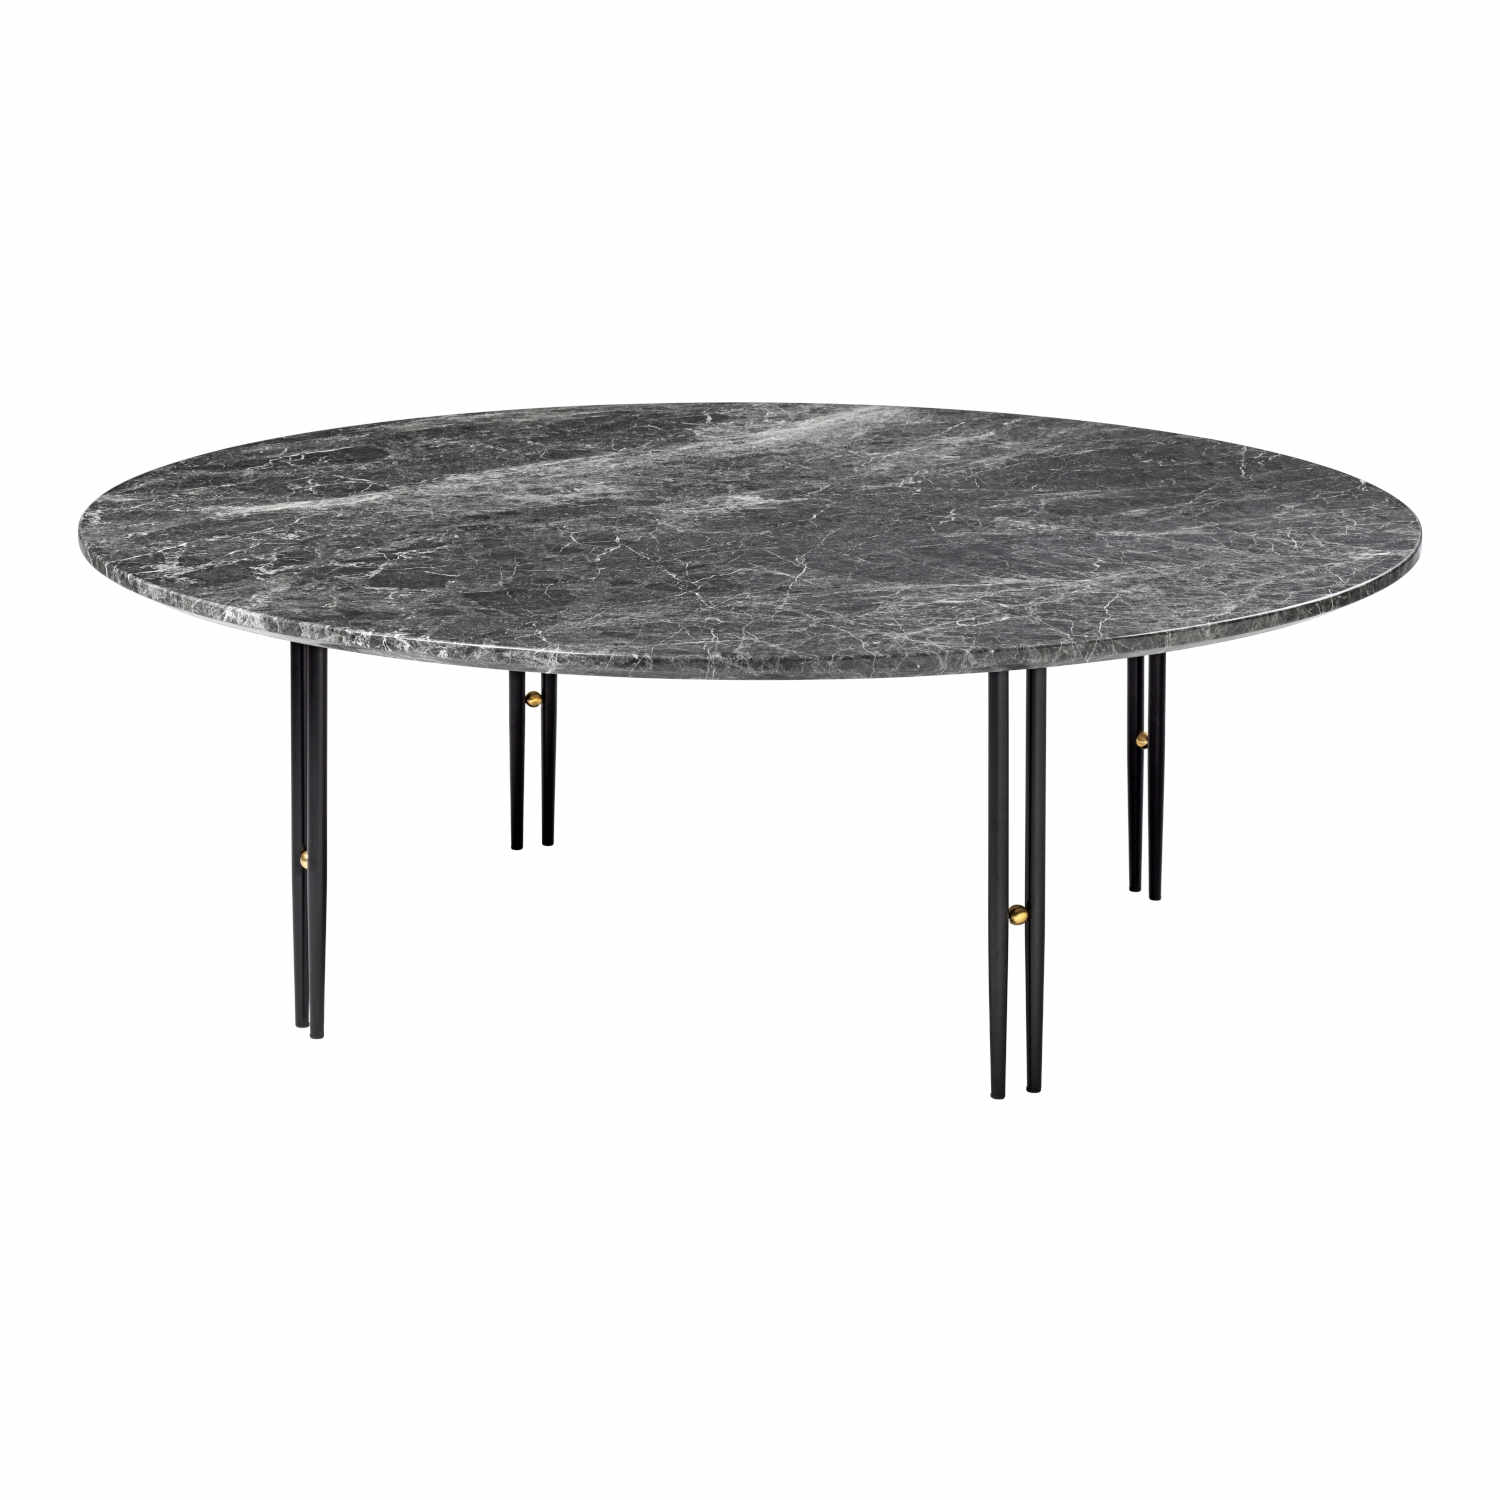 Ioi Coffee Table Beistelltisch, Grösse ø 100 cm, Tischplatte marmor, white carrara, Untergestell stahl, chrome von GUBI